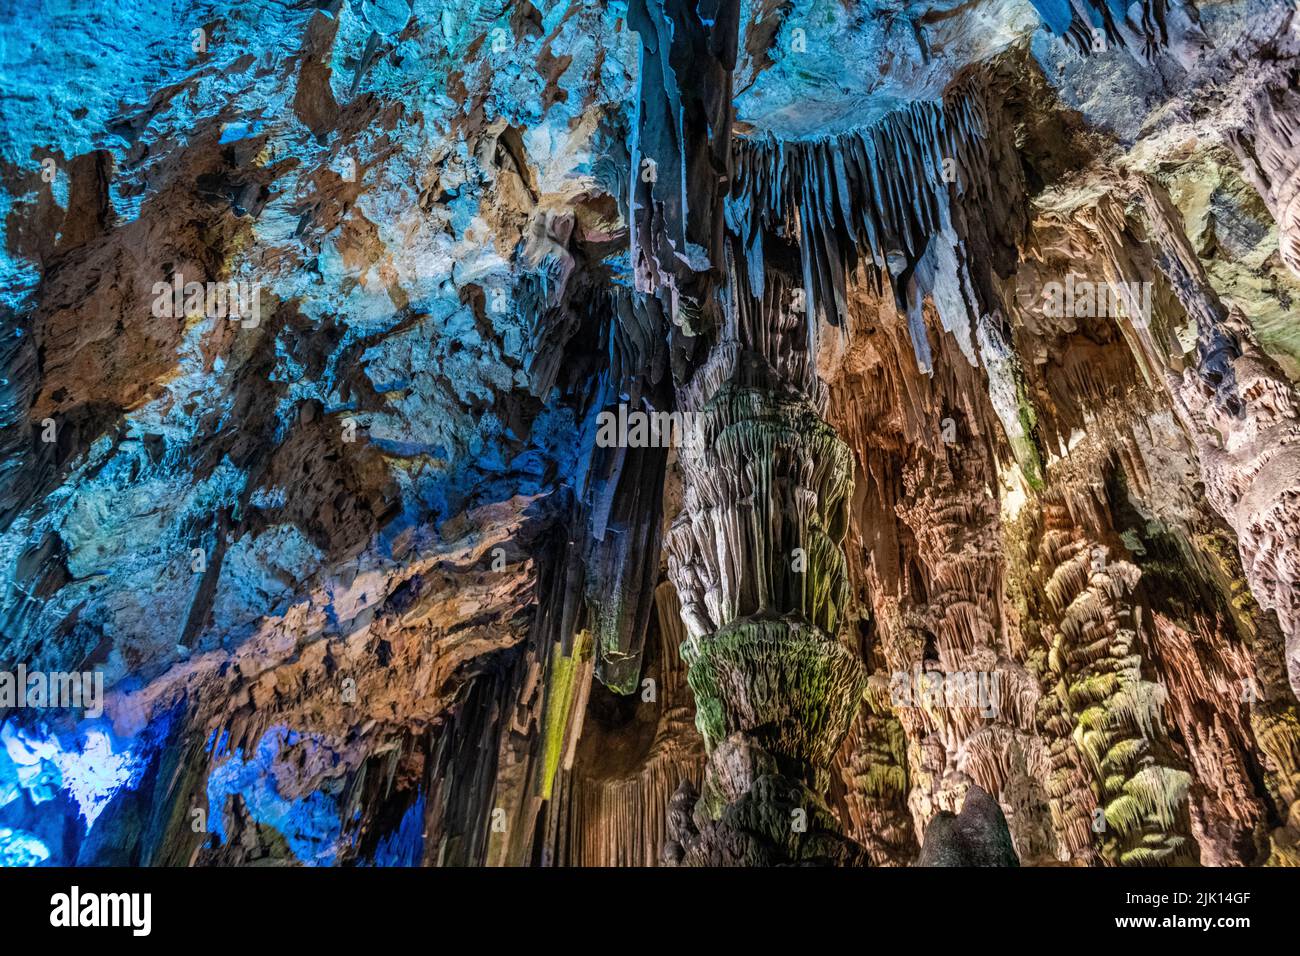 Grotte de Saint Michael's, Gibraltar, territoire britannique d'outre-mer, Europe Banque D'Images